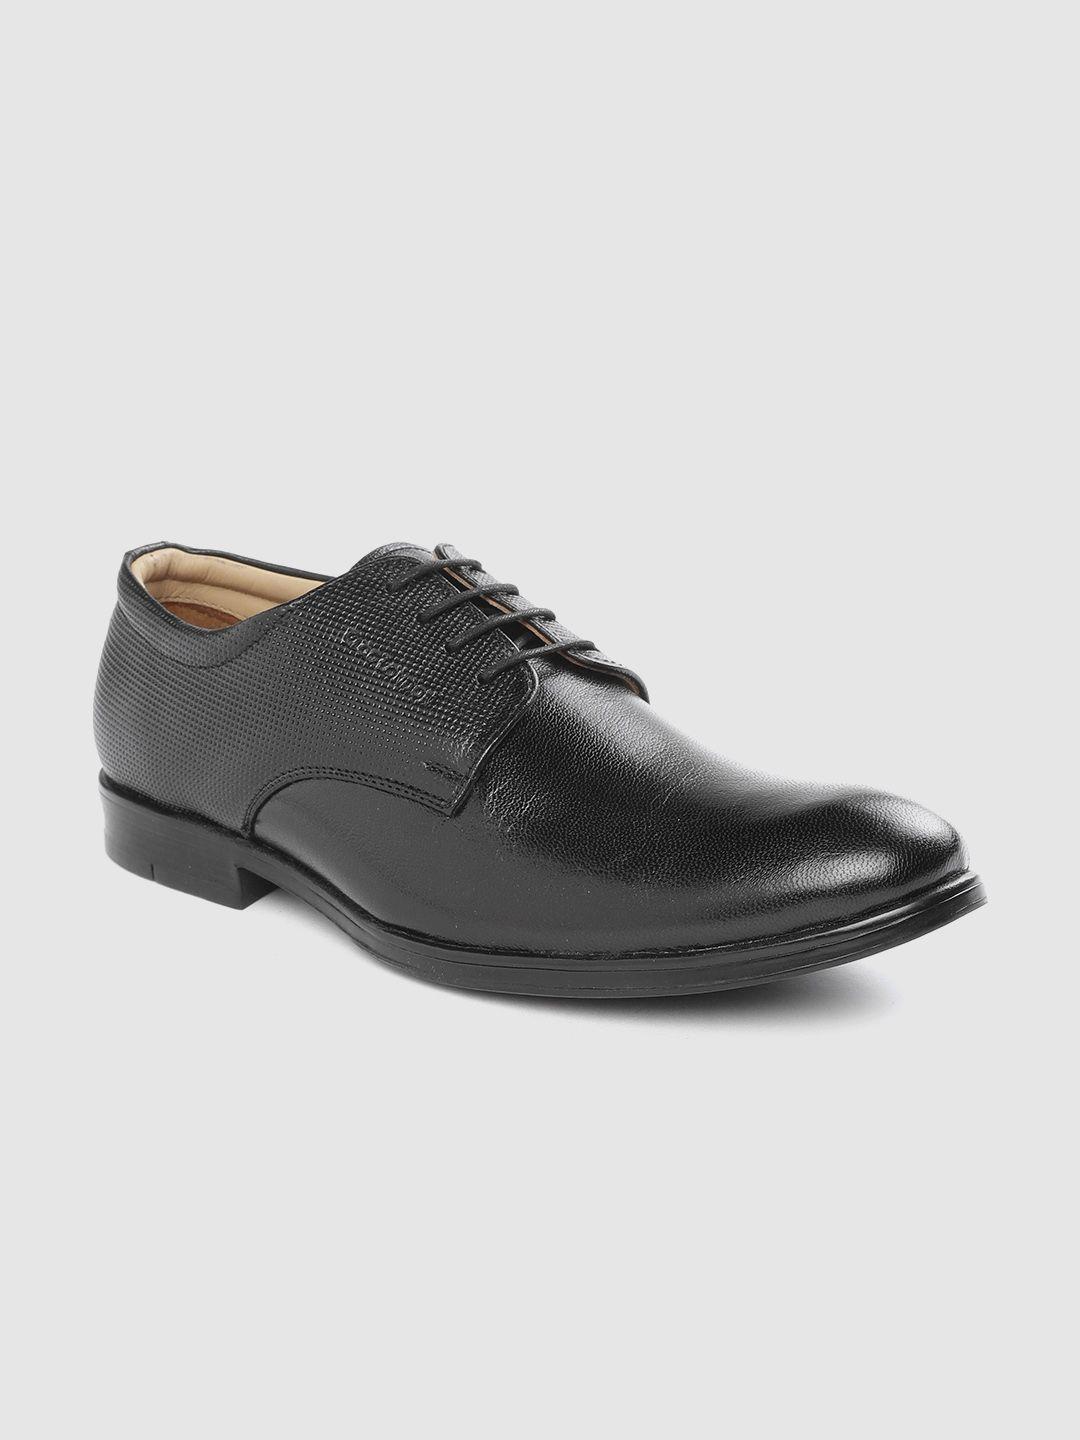 clog london men black formal leather derby shoes